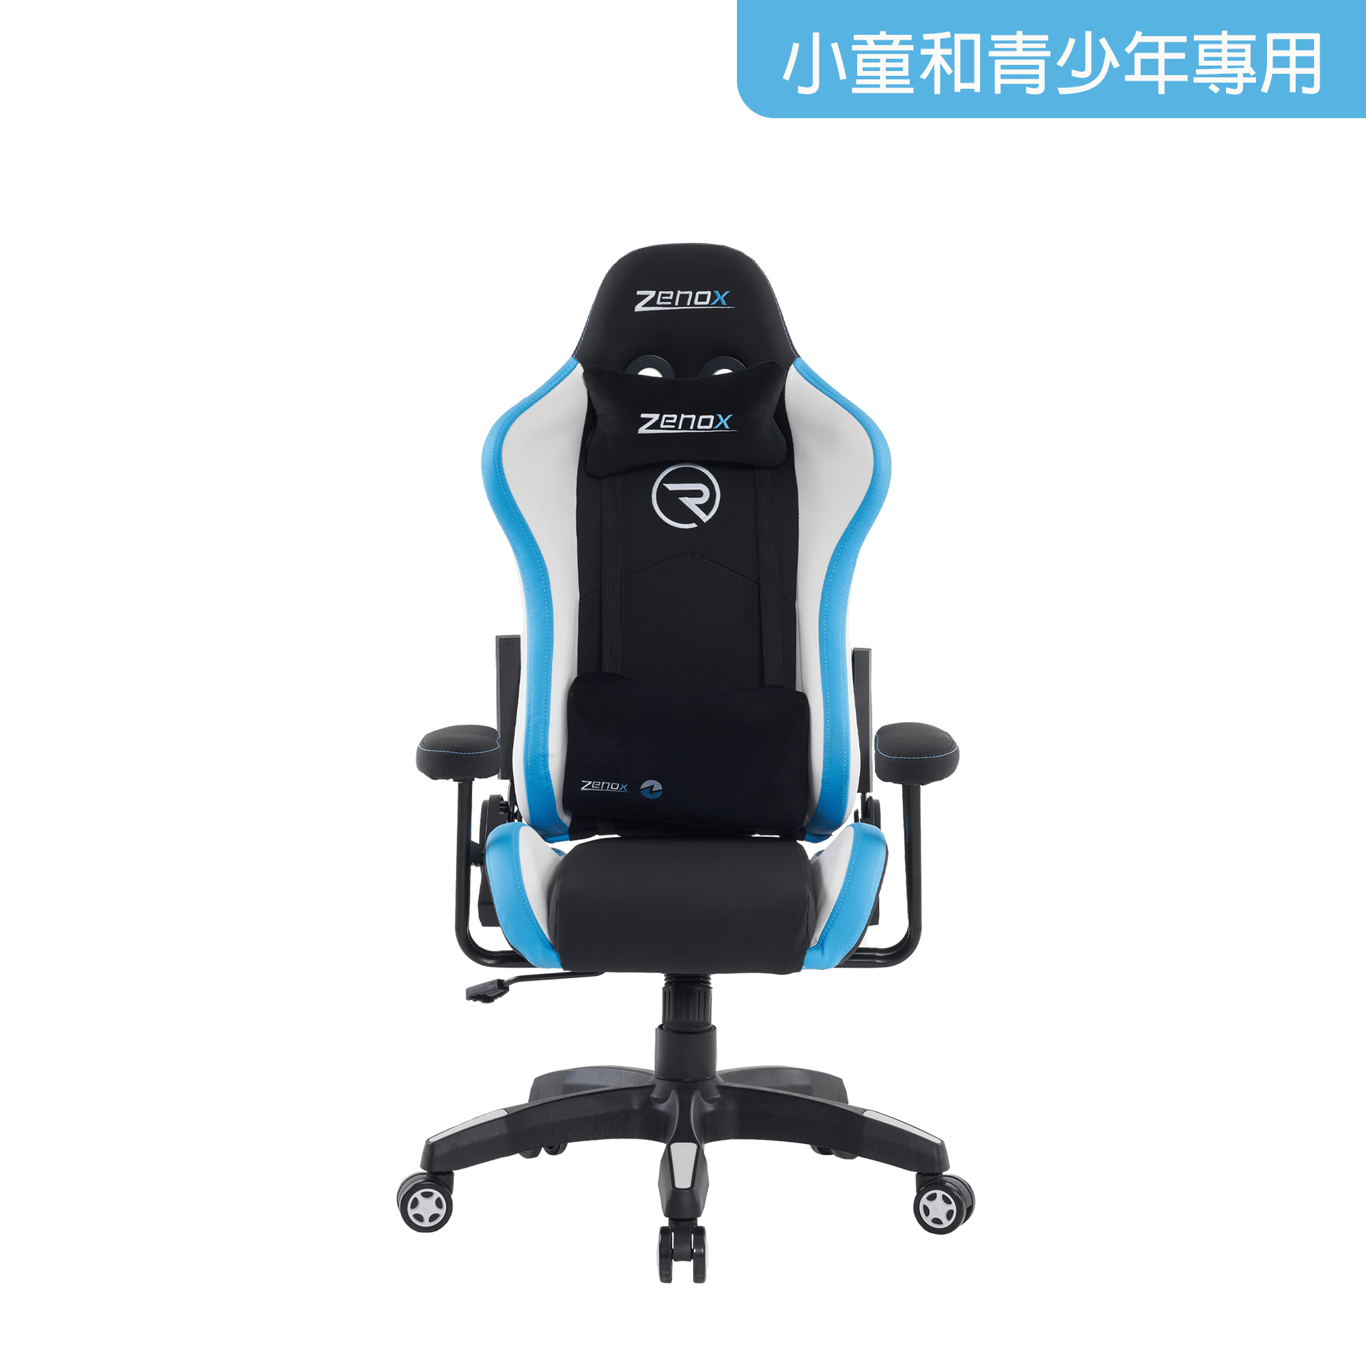 Zenox Rookie-MK2 Gaming Chair  - Sky Blue -1